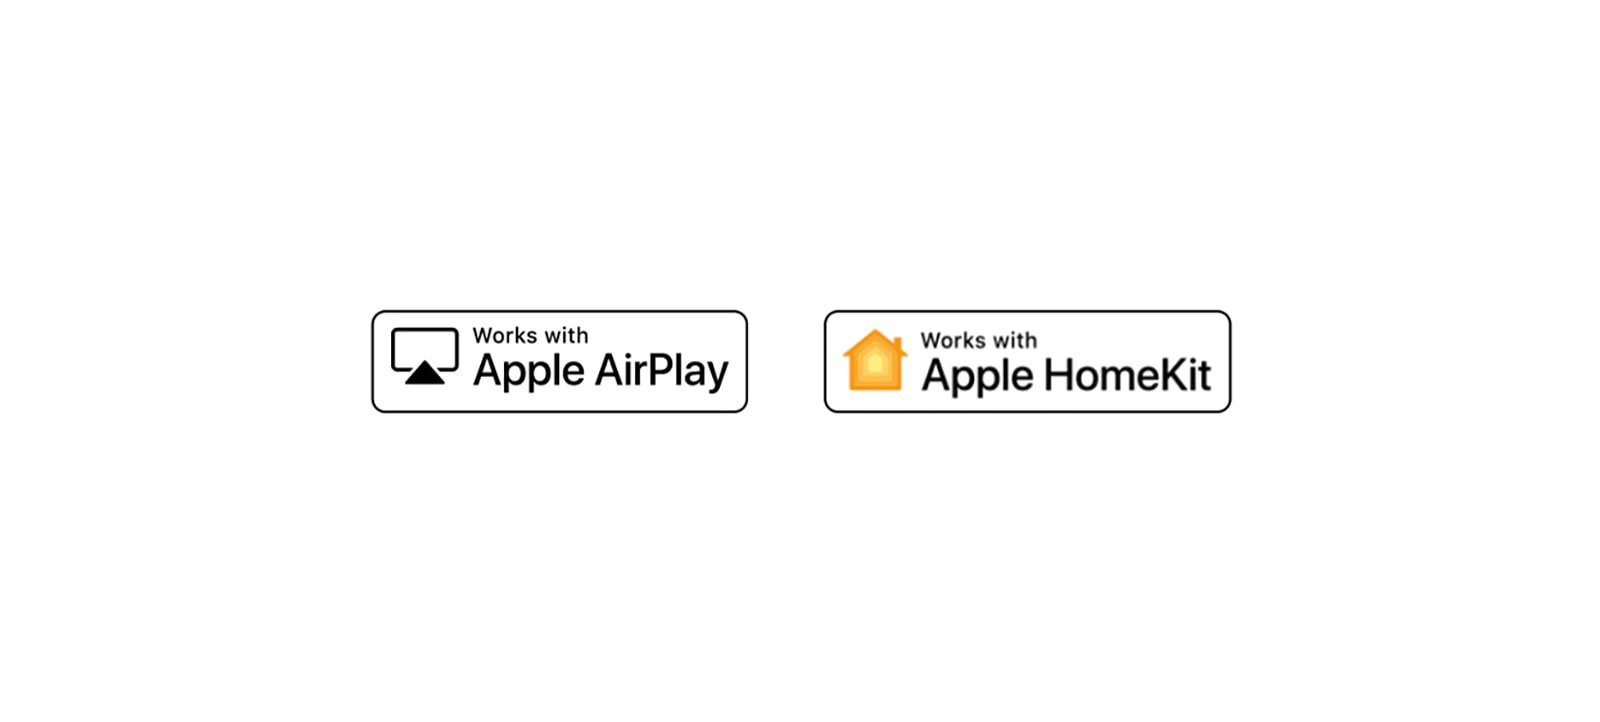 Detalles que muestran logotipos de Apple Airplay y Apple HomeKit en los que ThinQ AI es compatible.